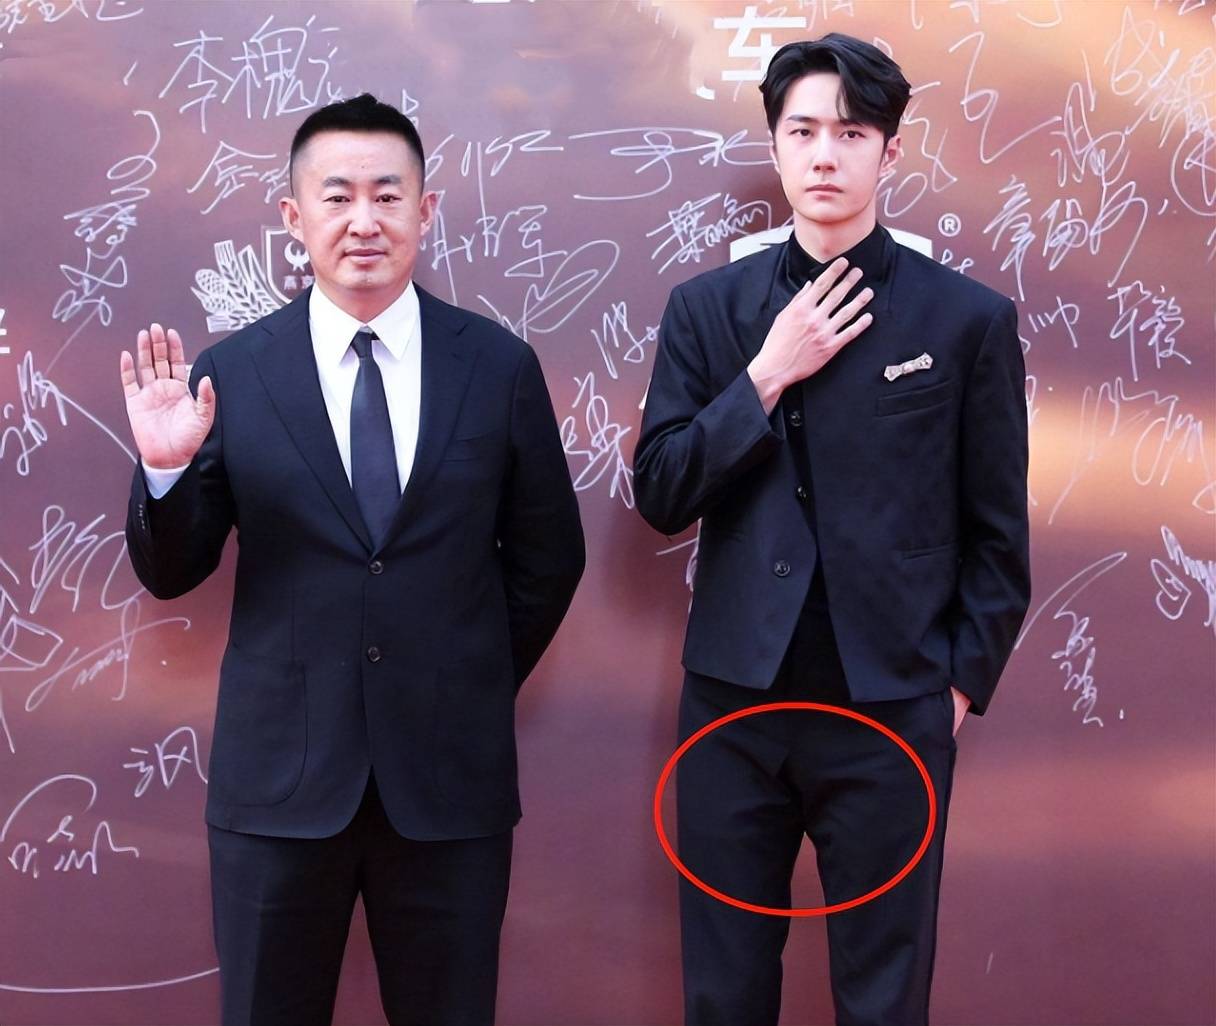 王一博跟某位艺人,在签字牌前面拍照时,他的裤裆处就隐约感觉开线了